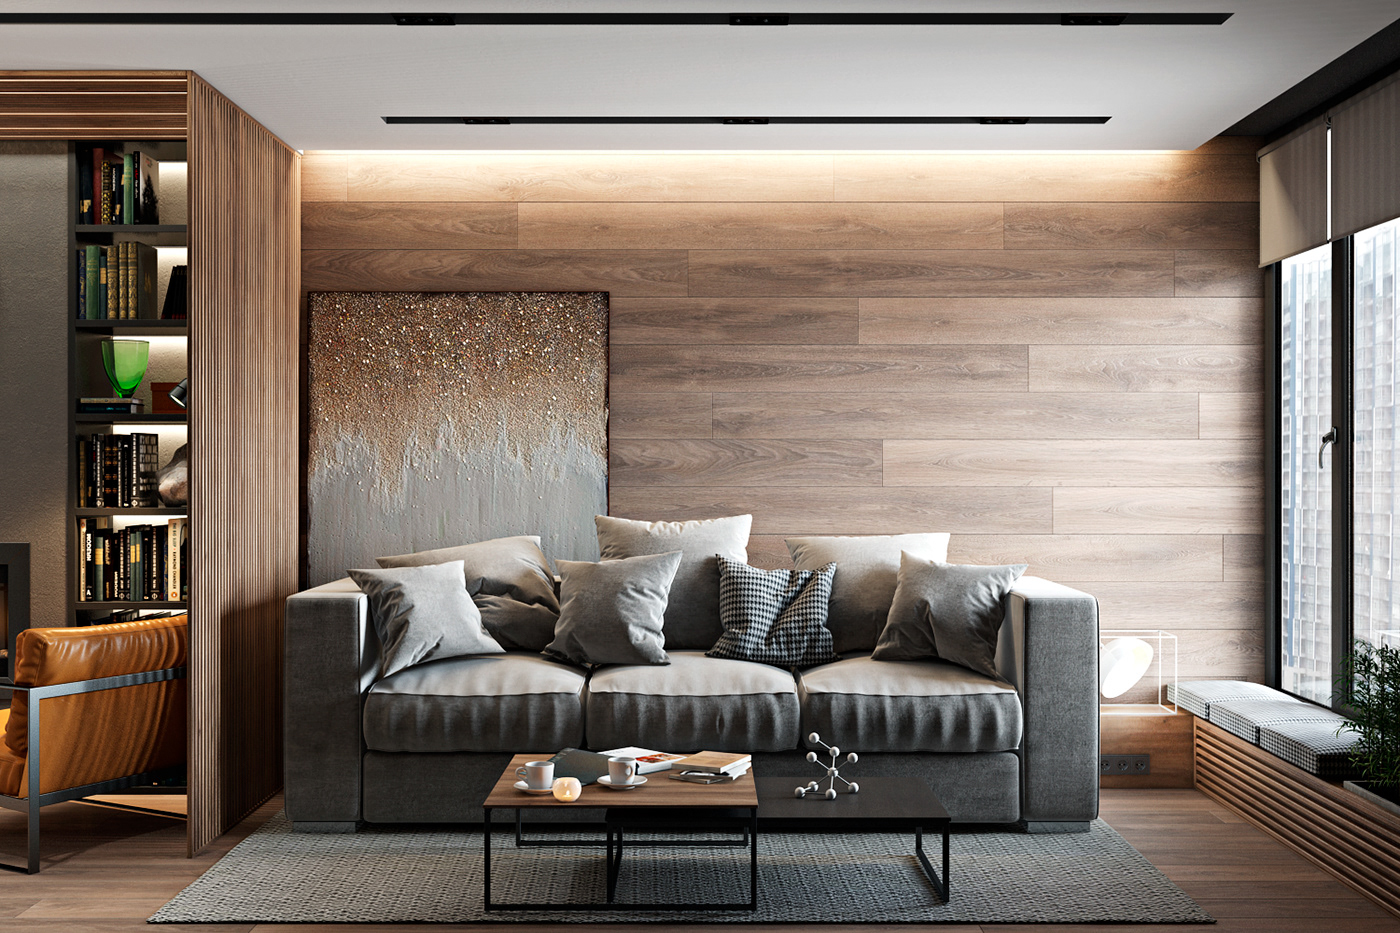 背景墙木质肌理包裹着浅淡的灰色沙发，线条与材质相互交融，传达出时尚的品味。